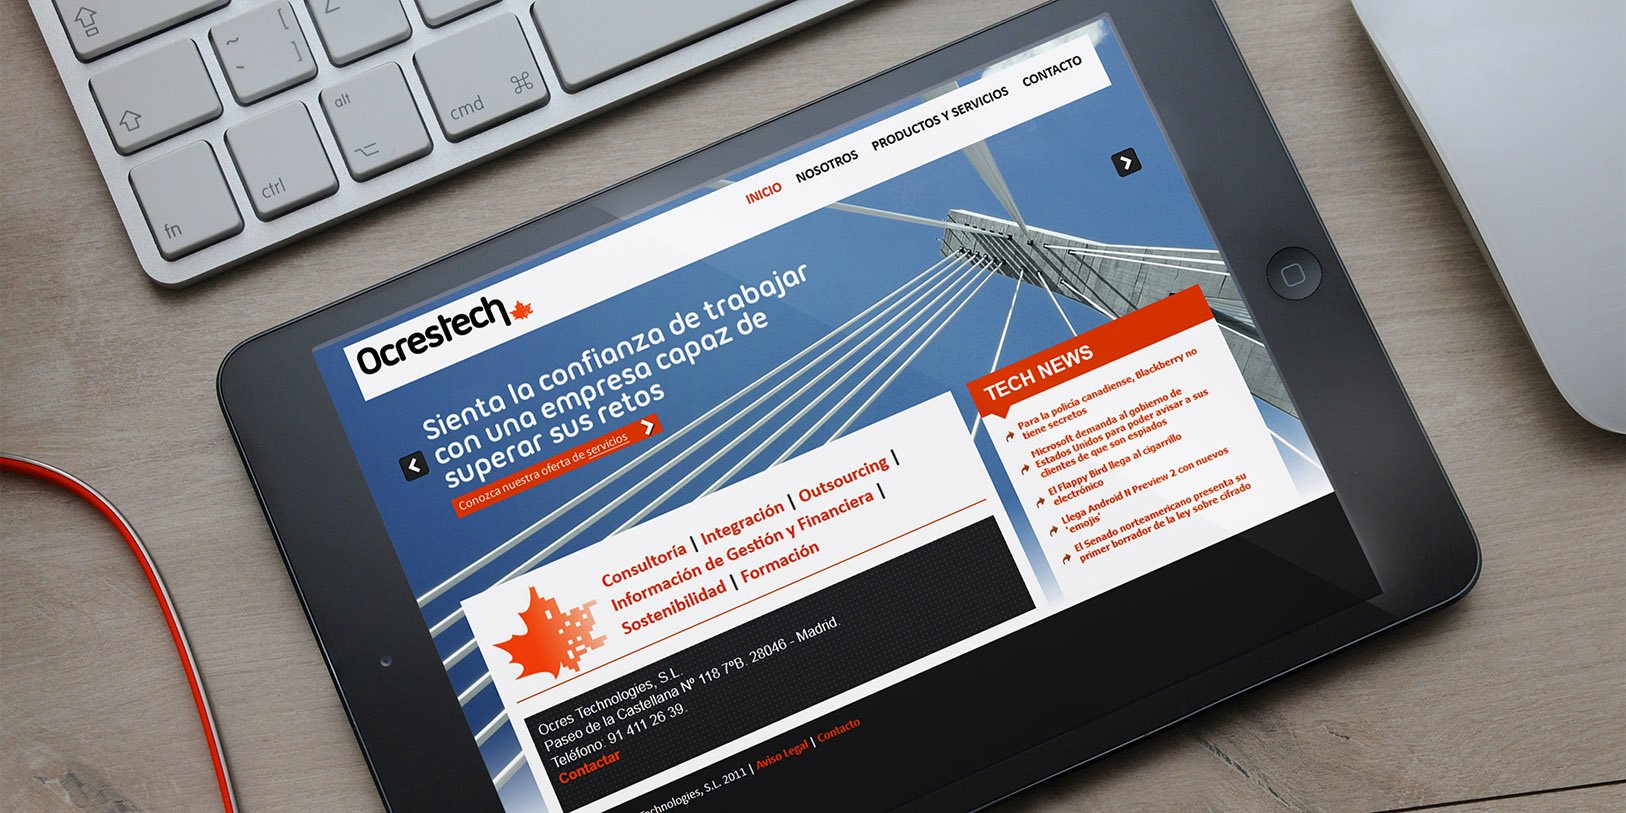 Diseño de web corporativa para Ocrestech